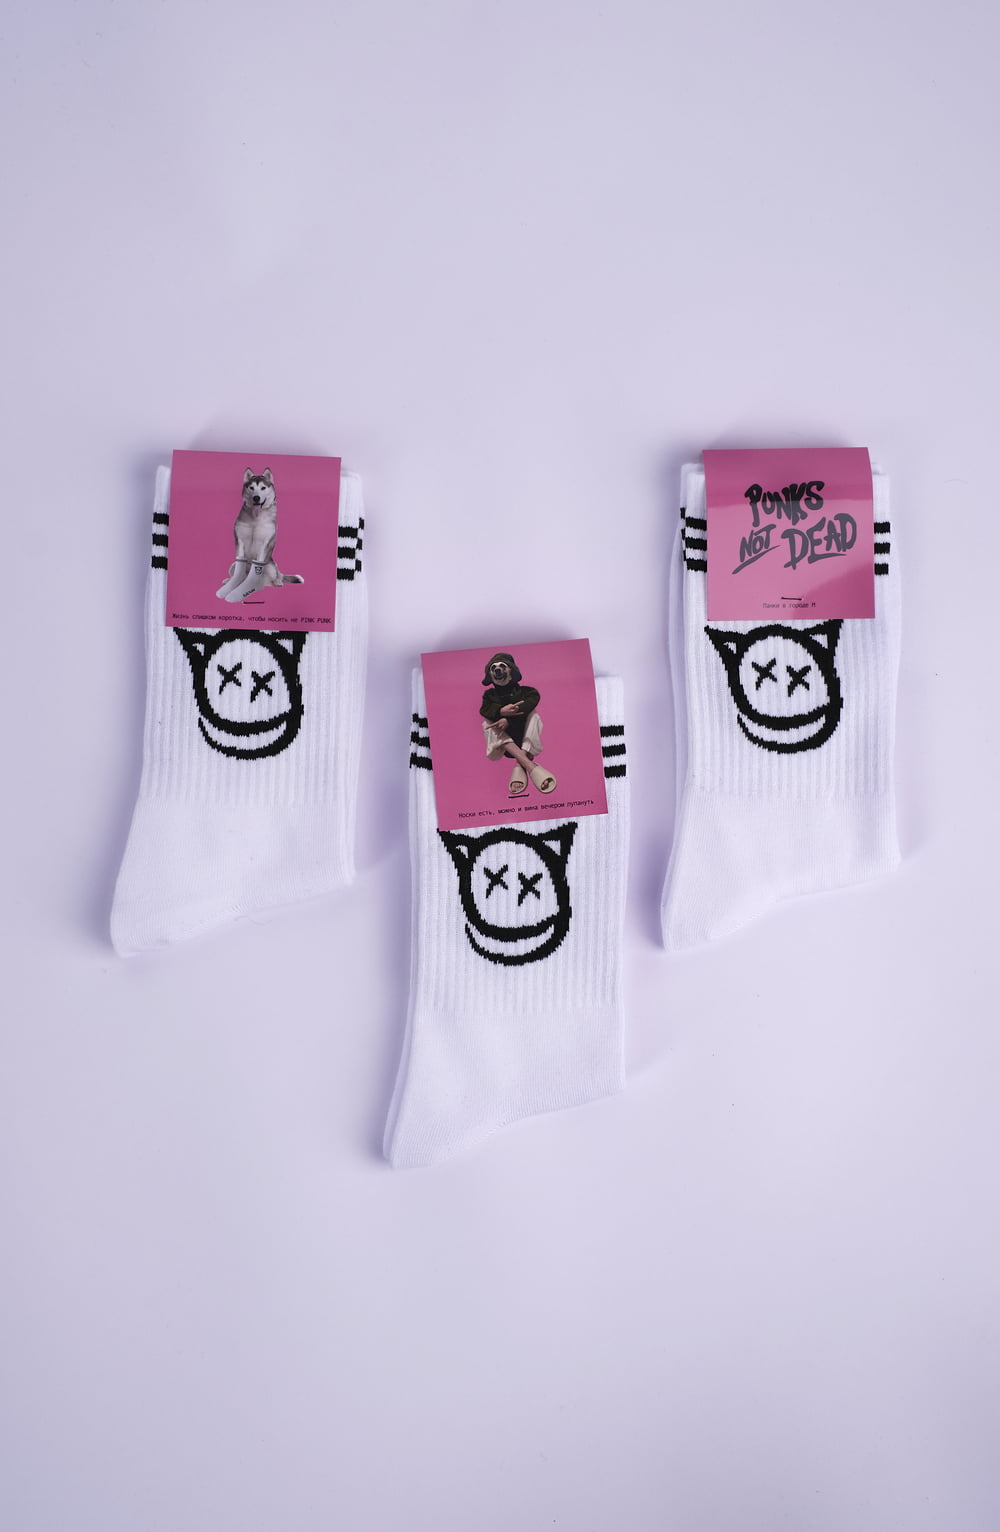 <p>Выделяйтесь с нашими уникальными носками, украшенными логотипом с котом. Созданные для смелых молодых людей, эти носки - это заявление о стиле и непокорности. Захватите свою пару и присоединяйтесь к бунту!</p>